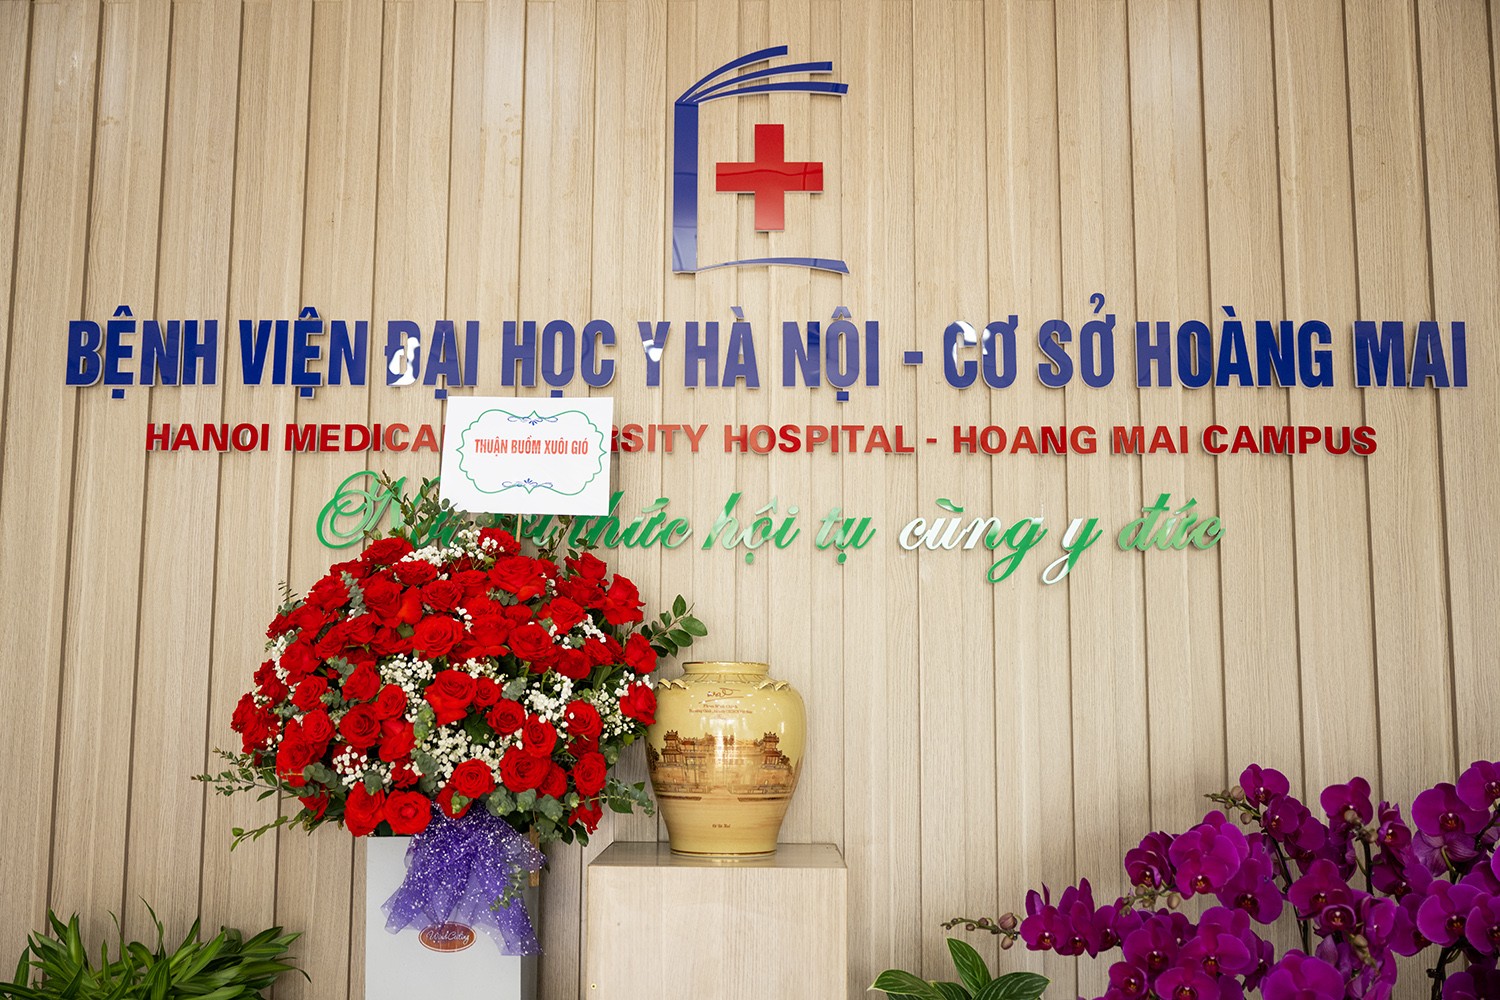 Đây là giải pháp giúp giảm tải cho Bệnh viện Đại học Y Hà Nội cơ sở Tôn Thất Tùng.